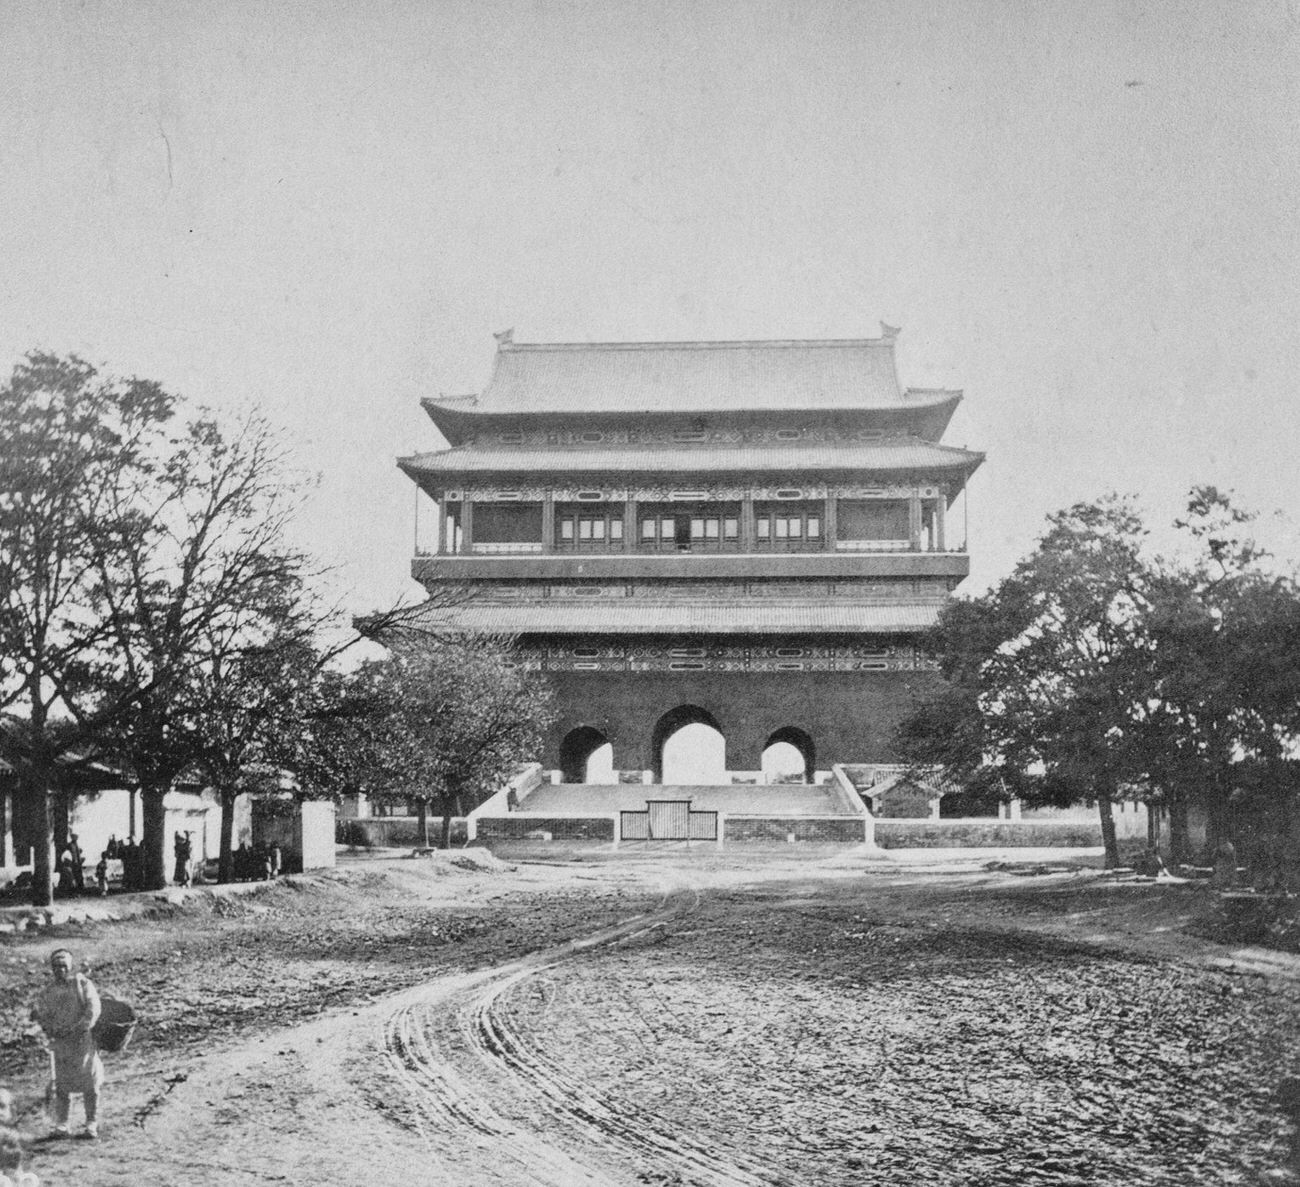 The Drum Tower, Peking, China, 1870s